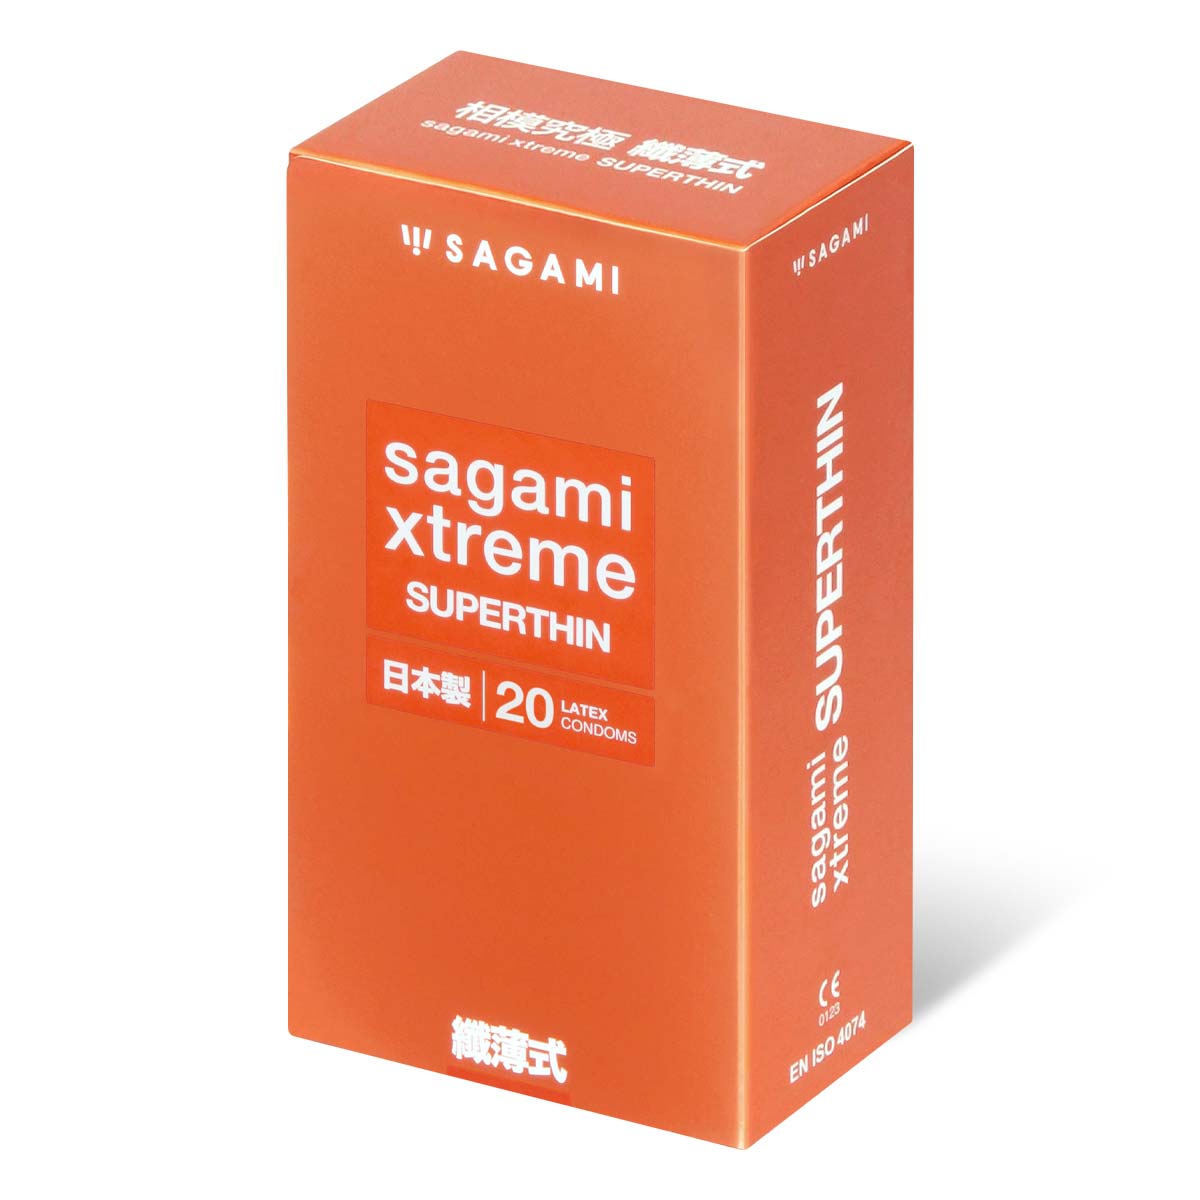 Sagami 相模究極 纖薄式 (第二代) 20 片裝 乳膠安全套